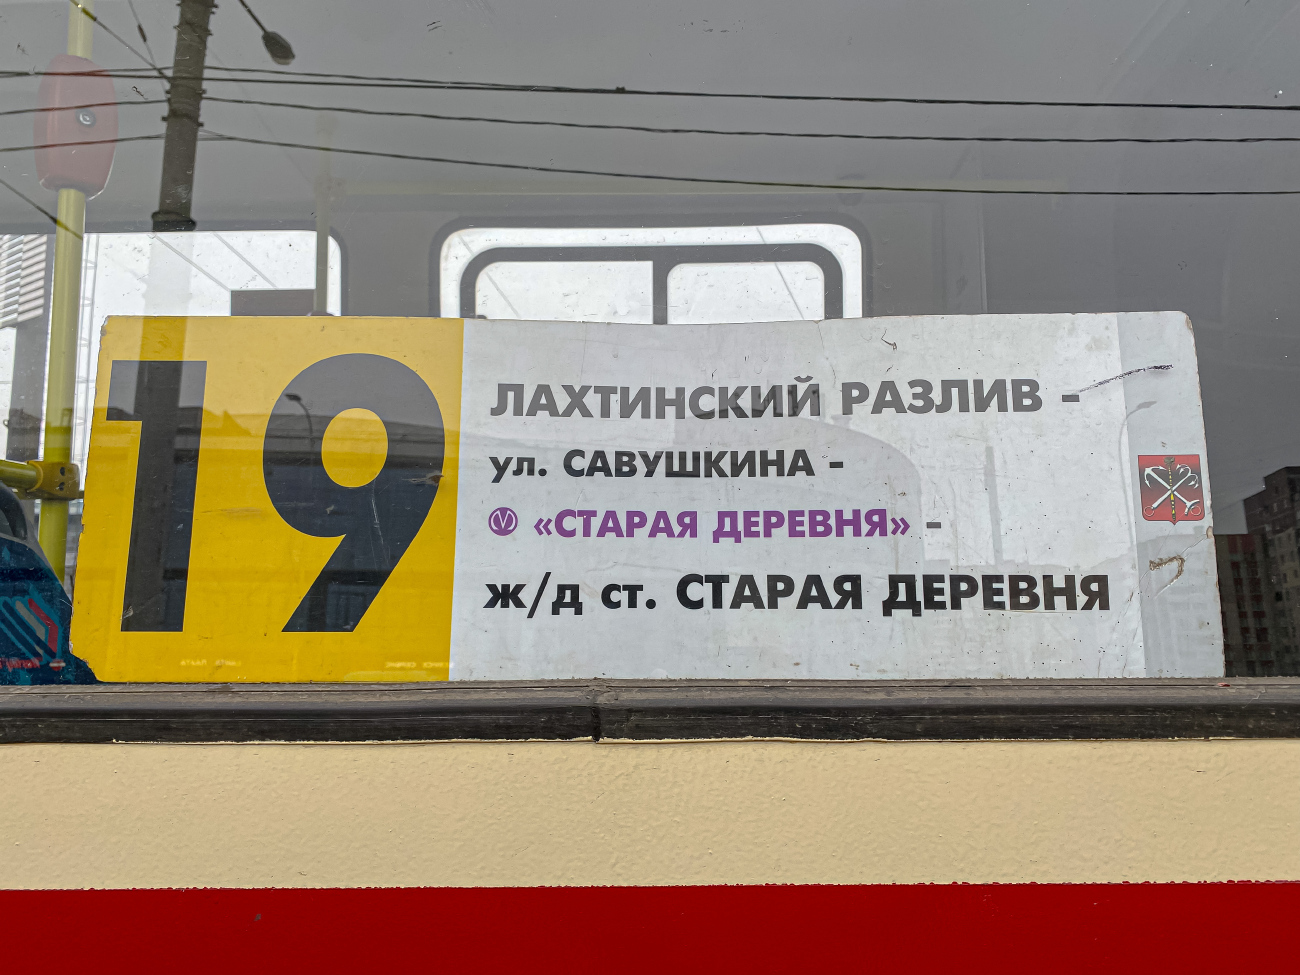 Санкт-Петербург — Маршрутные указатели (трамвай)